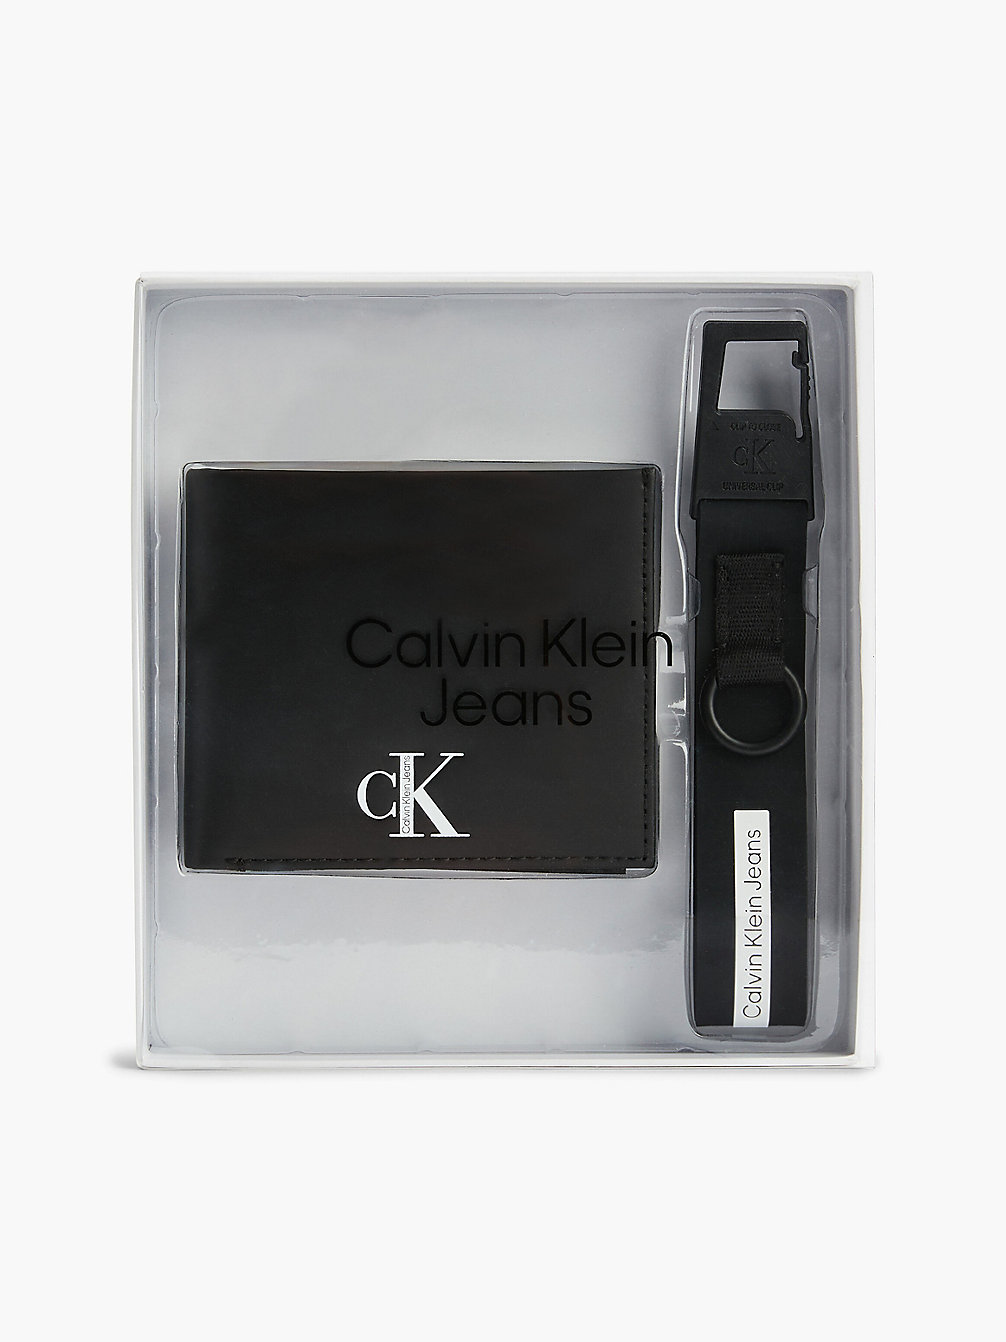 BLACK > Подарочный набор из кожаного кошелька с брелком > undefined женщины - Calvin Klein